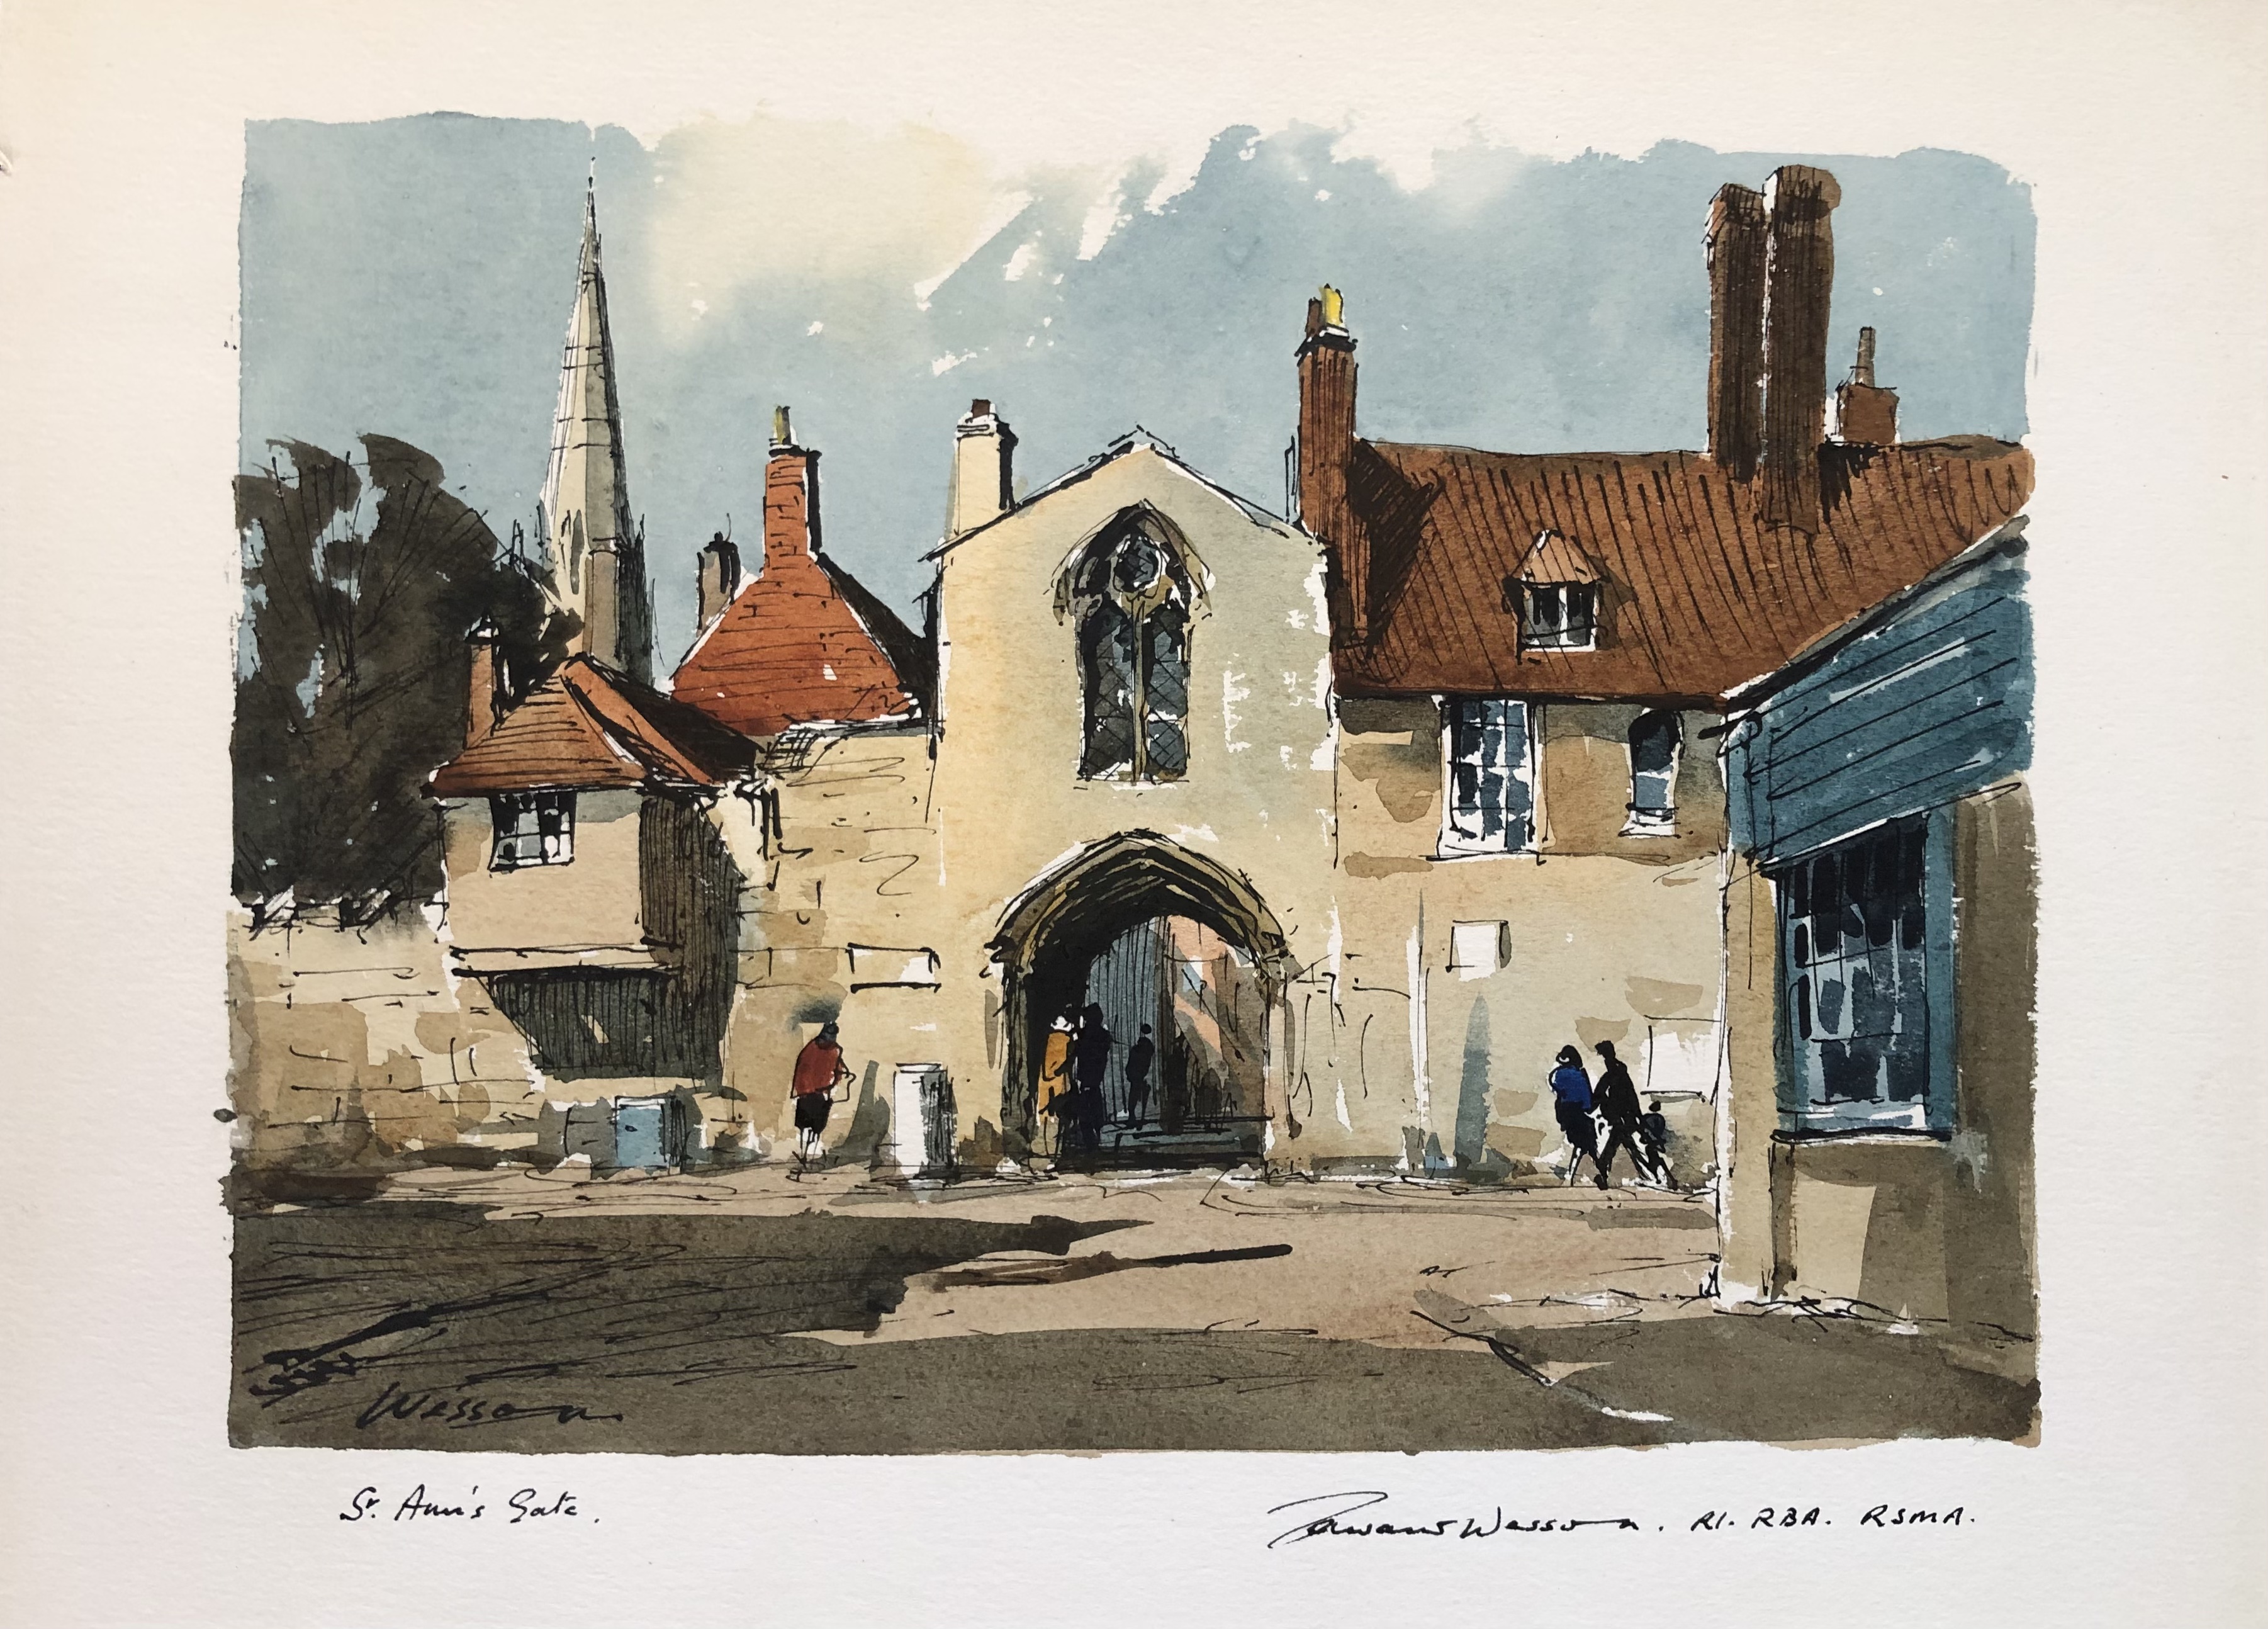 St. Anne’s gate, Salisbury, Wiltshire